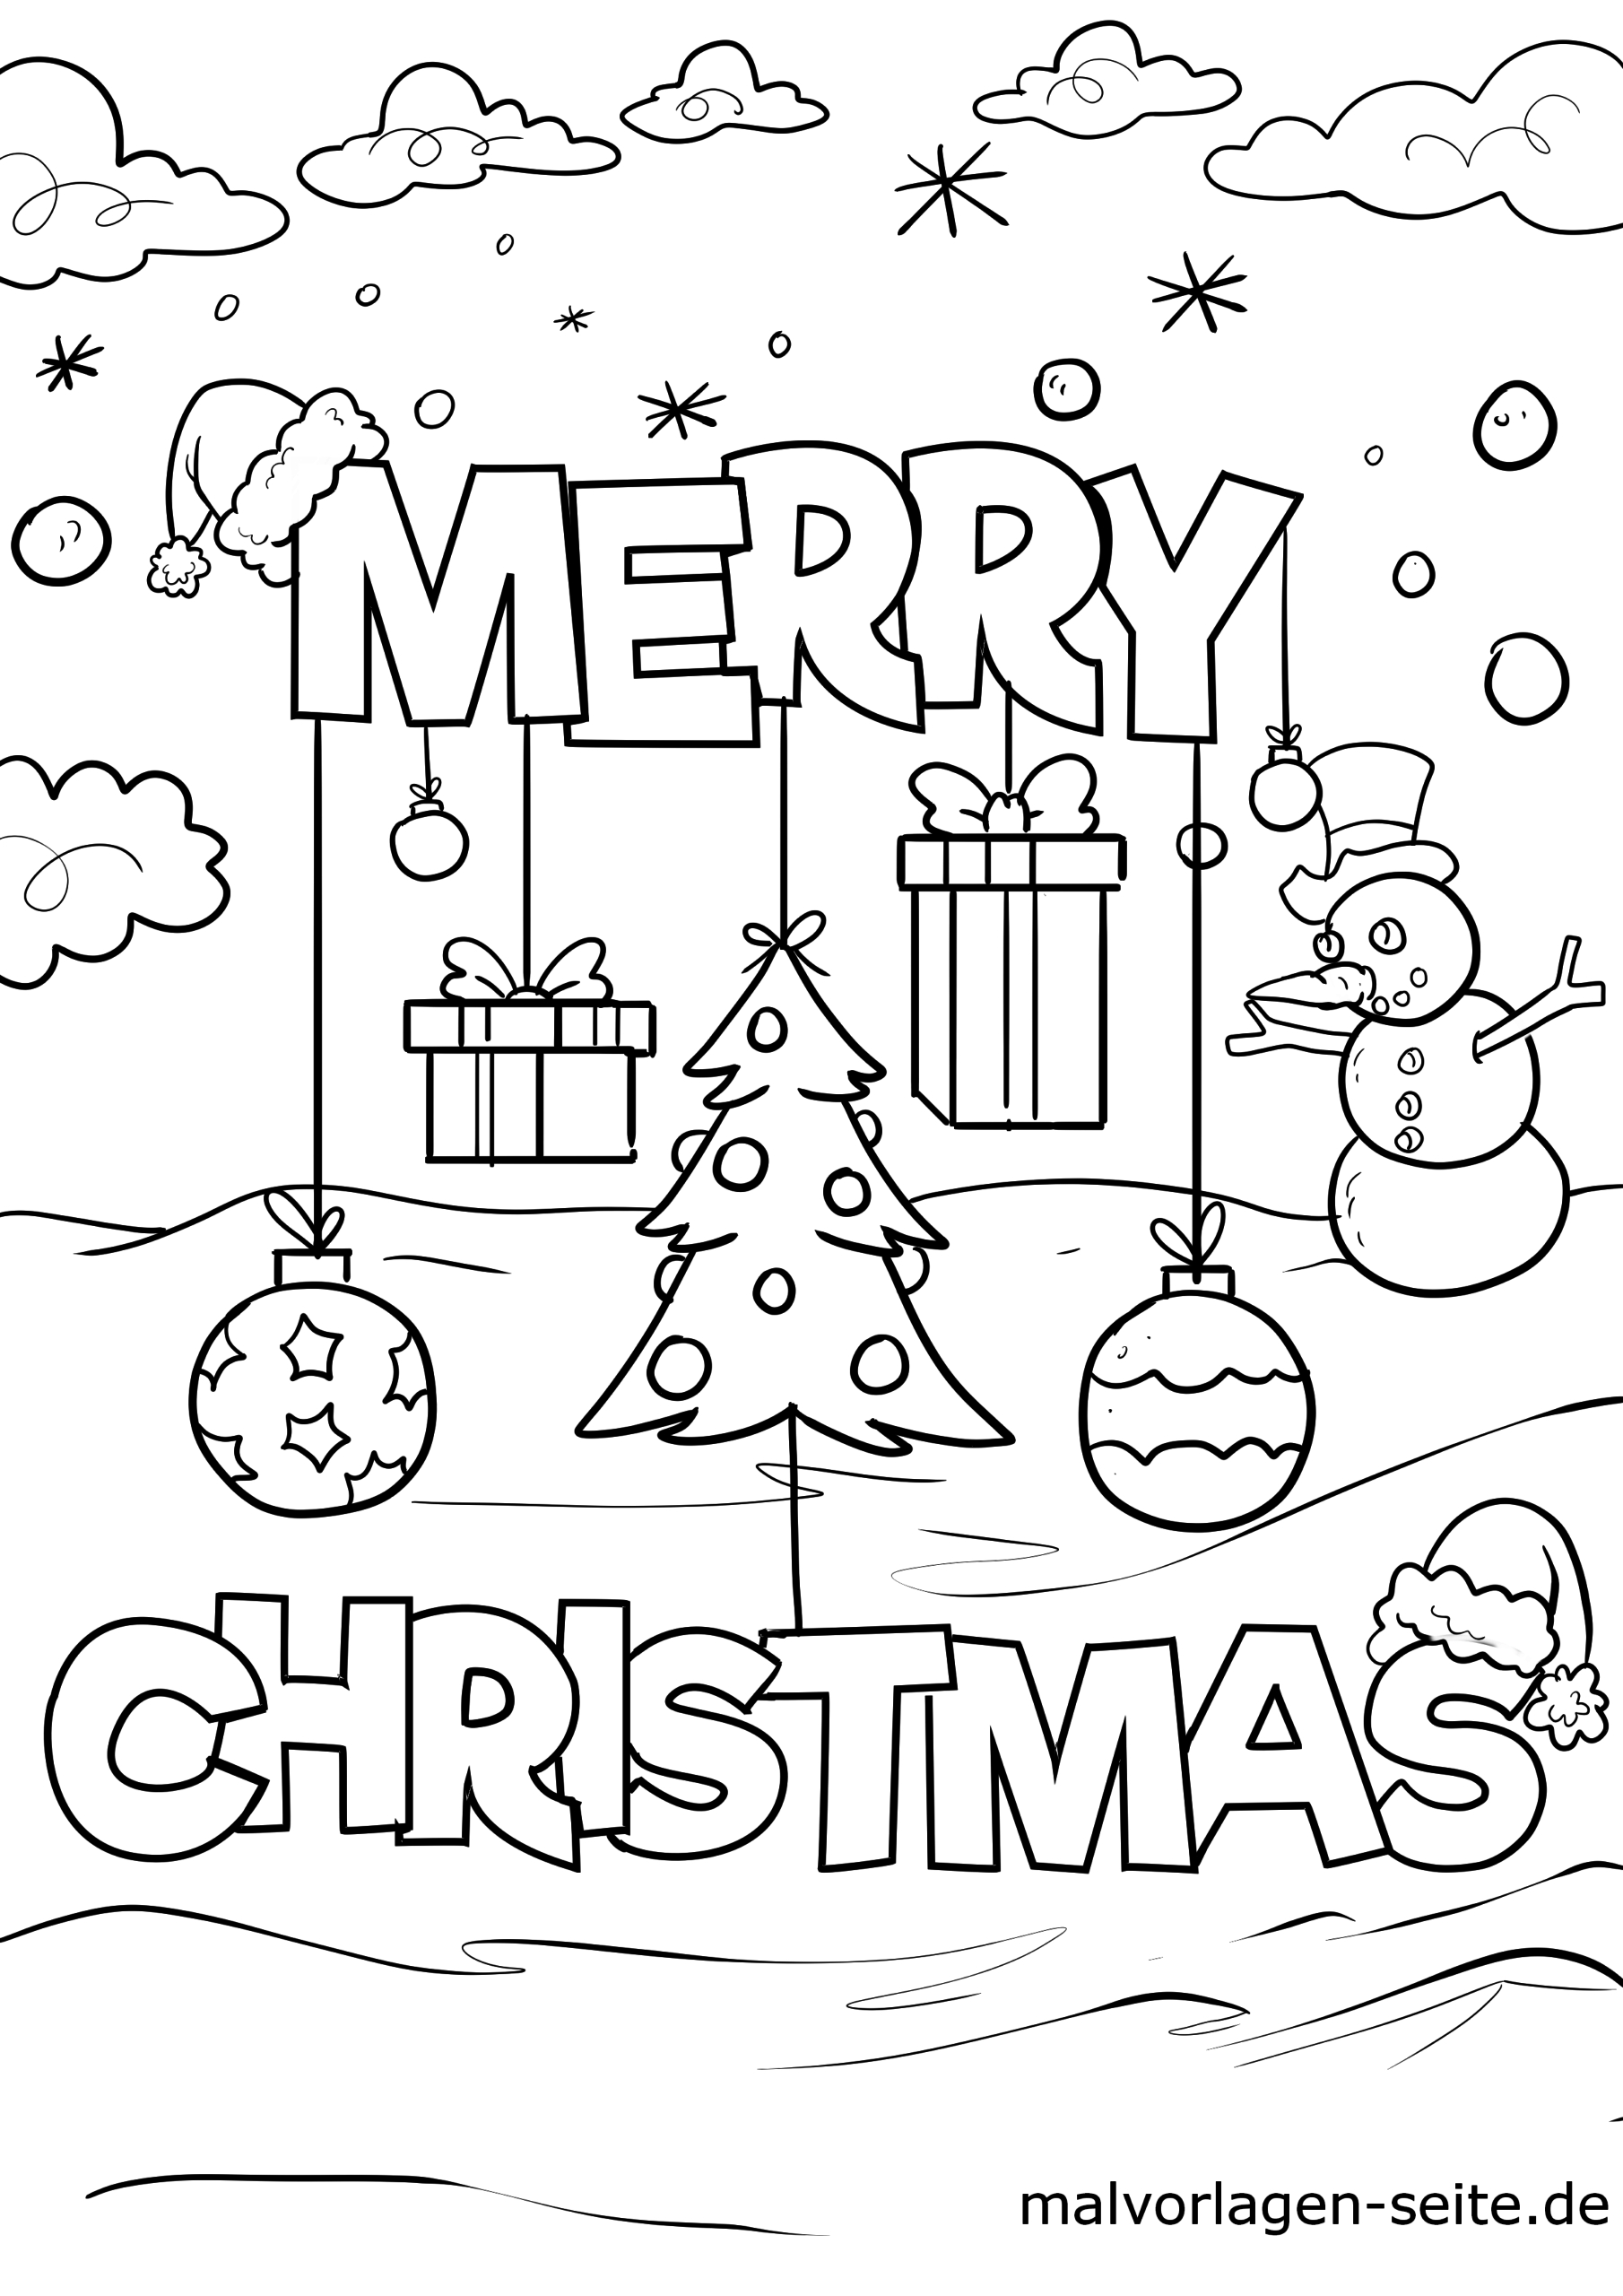 Malvorlage Merry Christmas | Weihnachten - Ausmalbilder in Malvorlagen Weihnachten